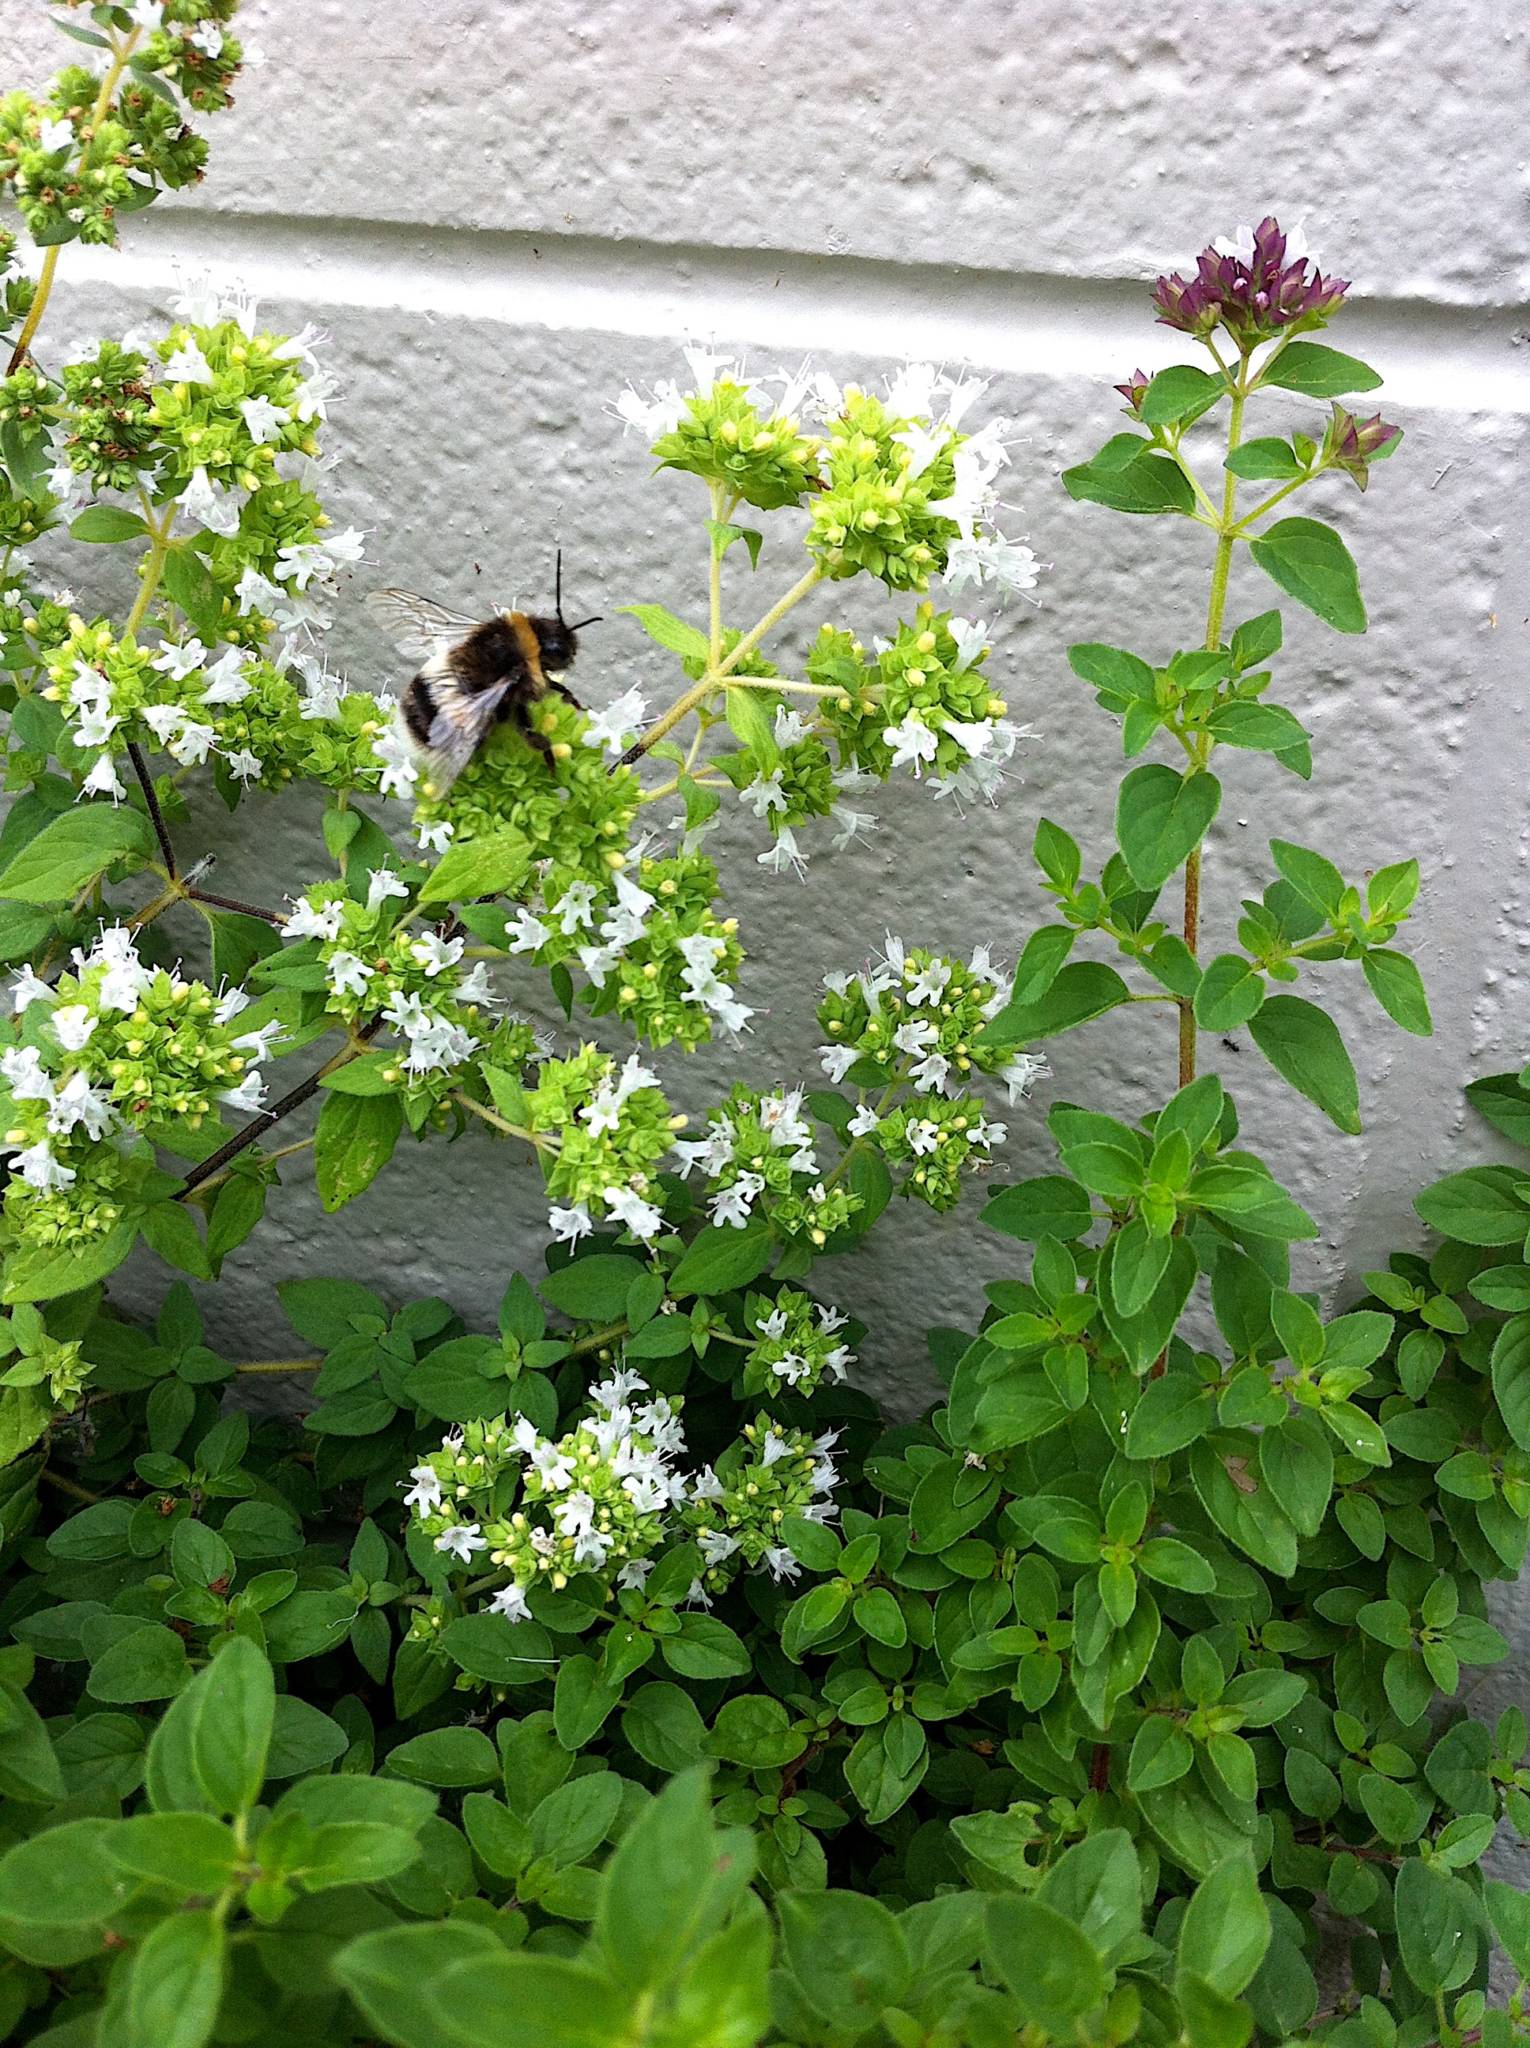 Oregano brings bees to the garden